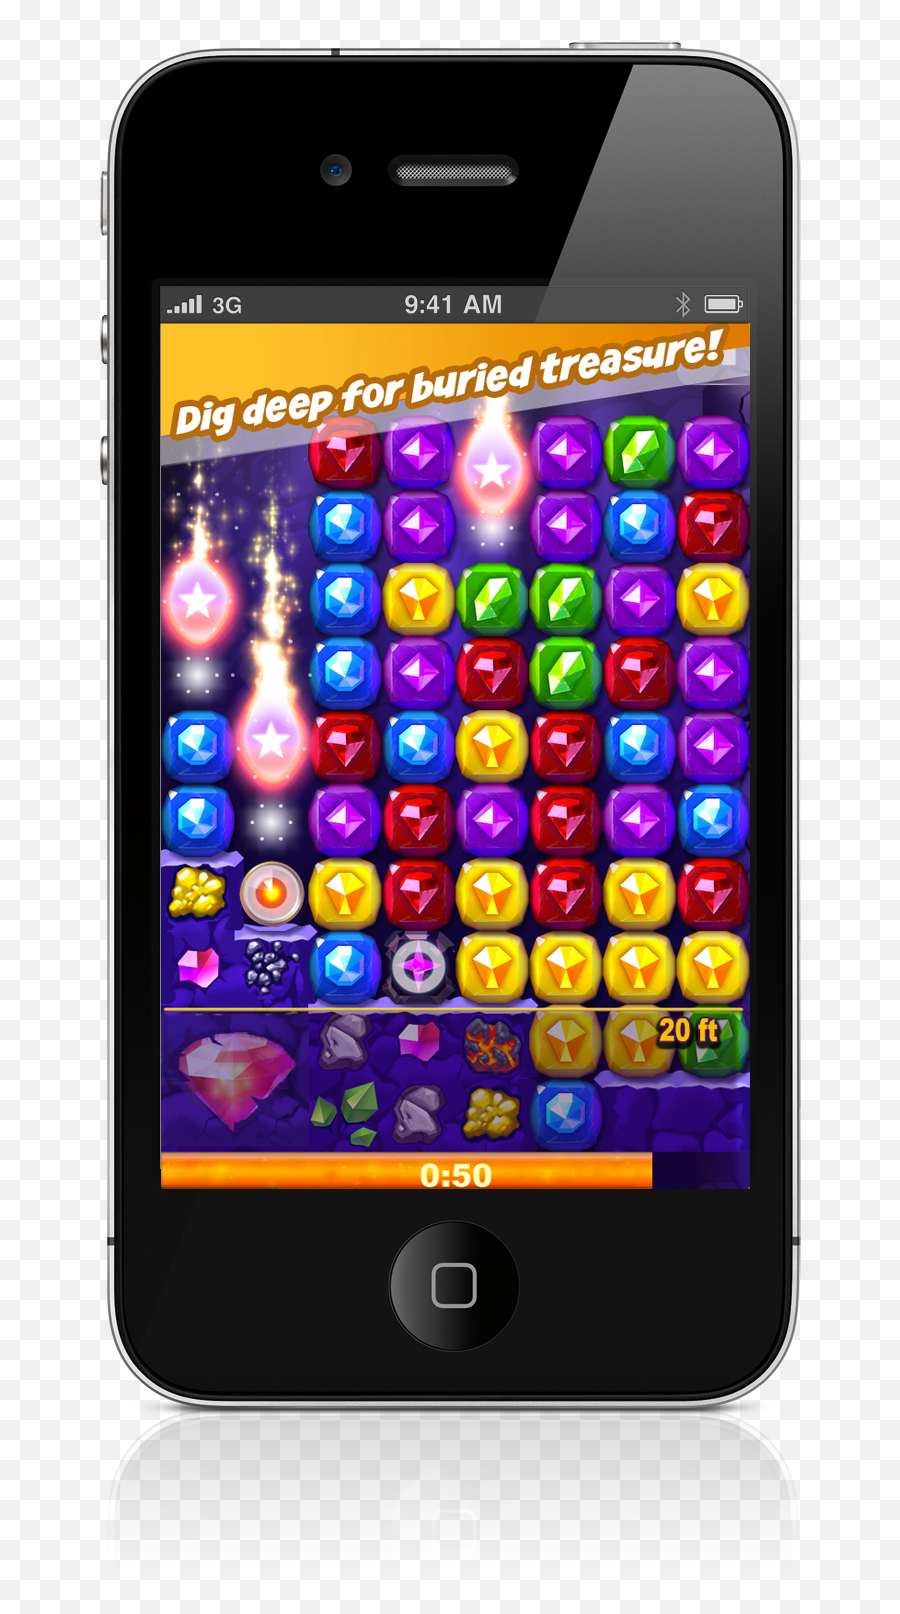 Zyngau0027s Arcade Games Go Mobile Ruby Blast Launches On Ios Emoji,Purple Bird Emoji On Facebook